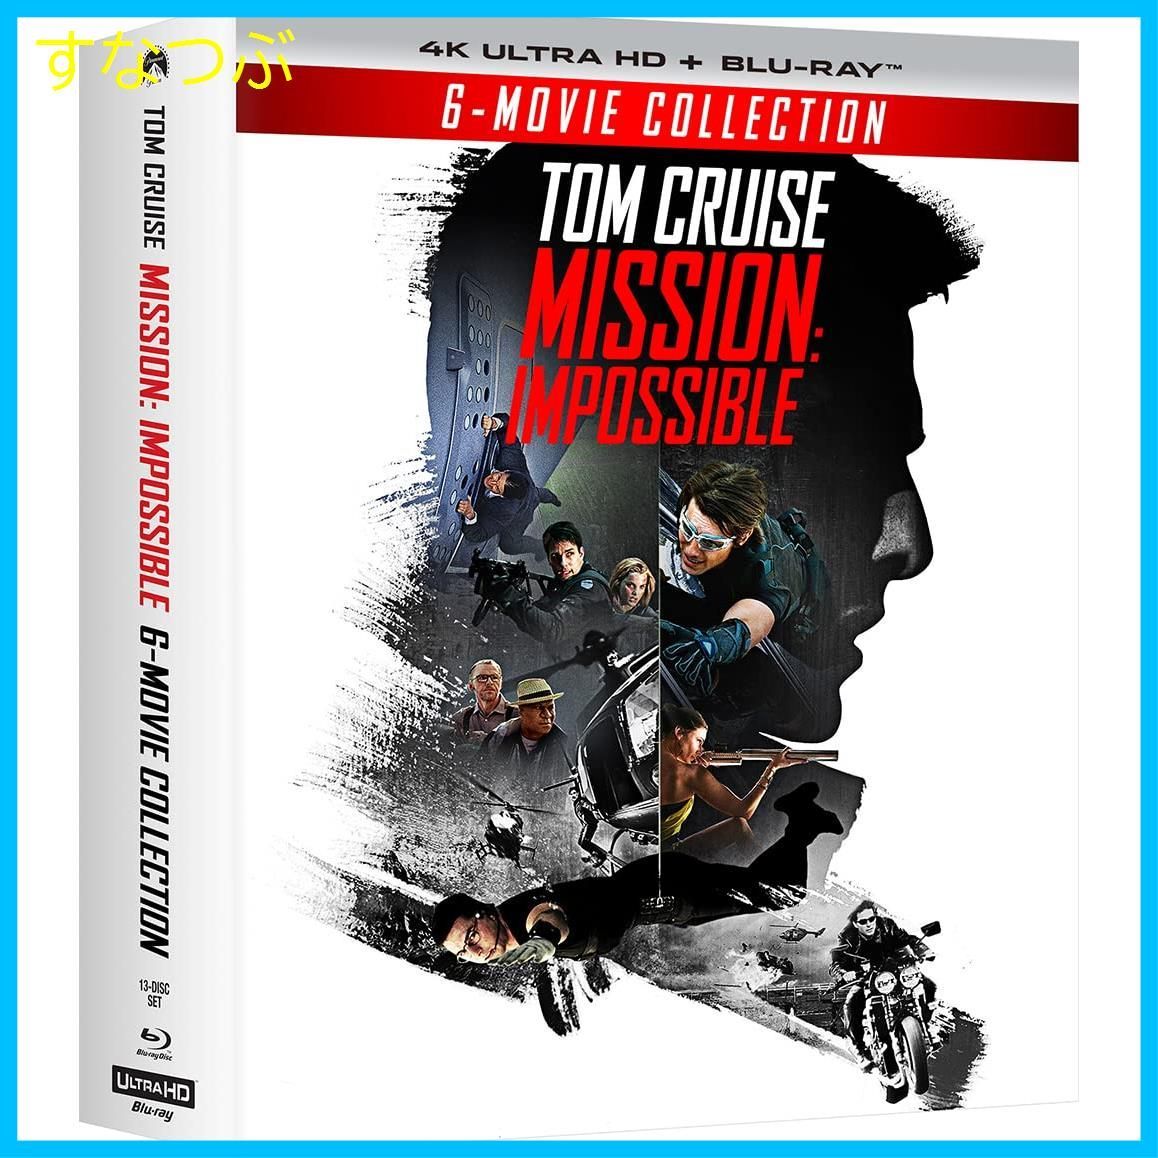 【新品未開封】ミッション:インポッシブル 6 ムービー・コレクション (4K ULTRA HD + Blu-rayセット)[4K ULTRA HD + Blu-ray] トム・クルーズ (出演) 形式: Blu-ray